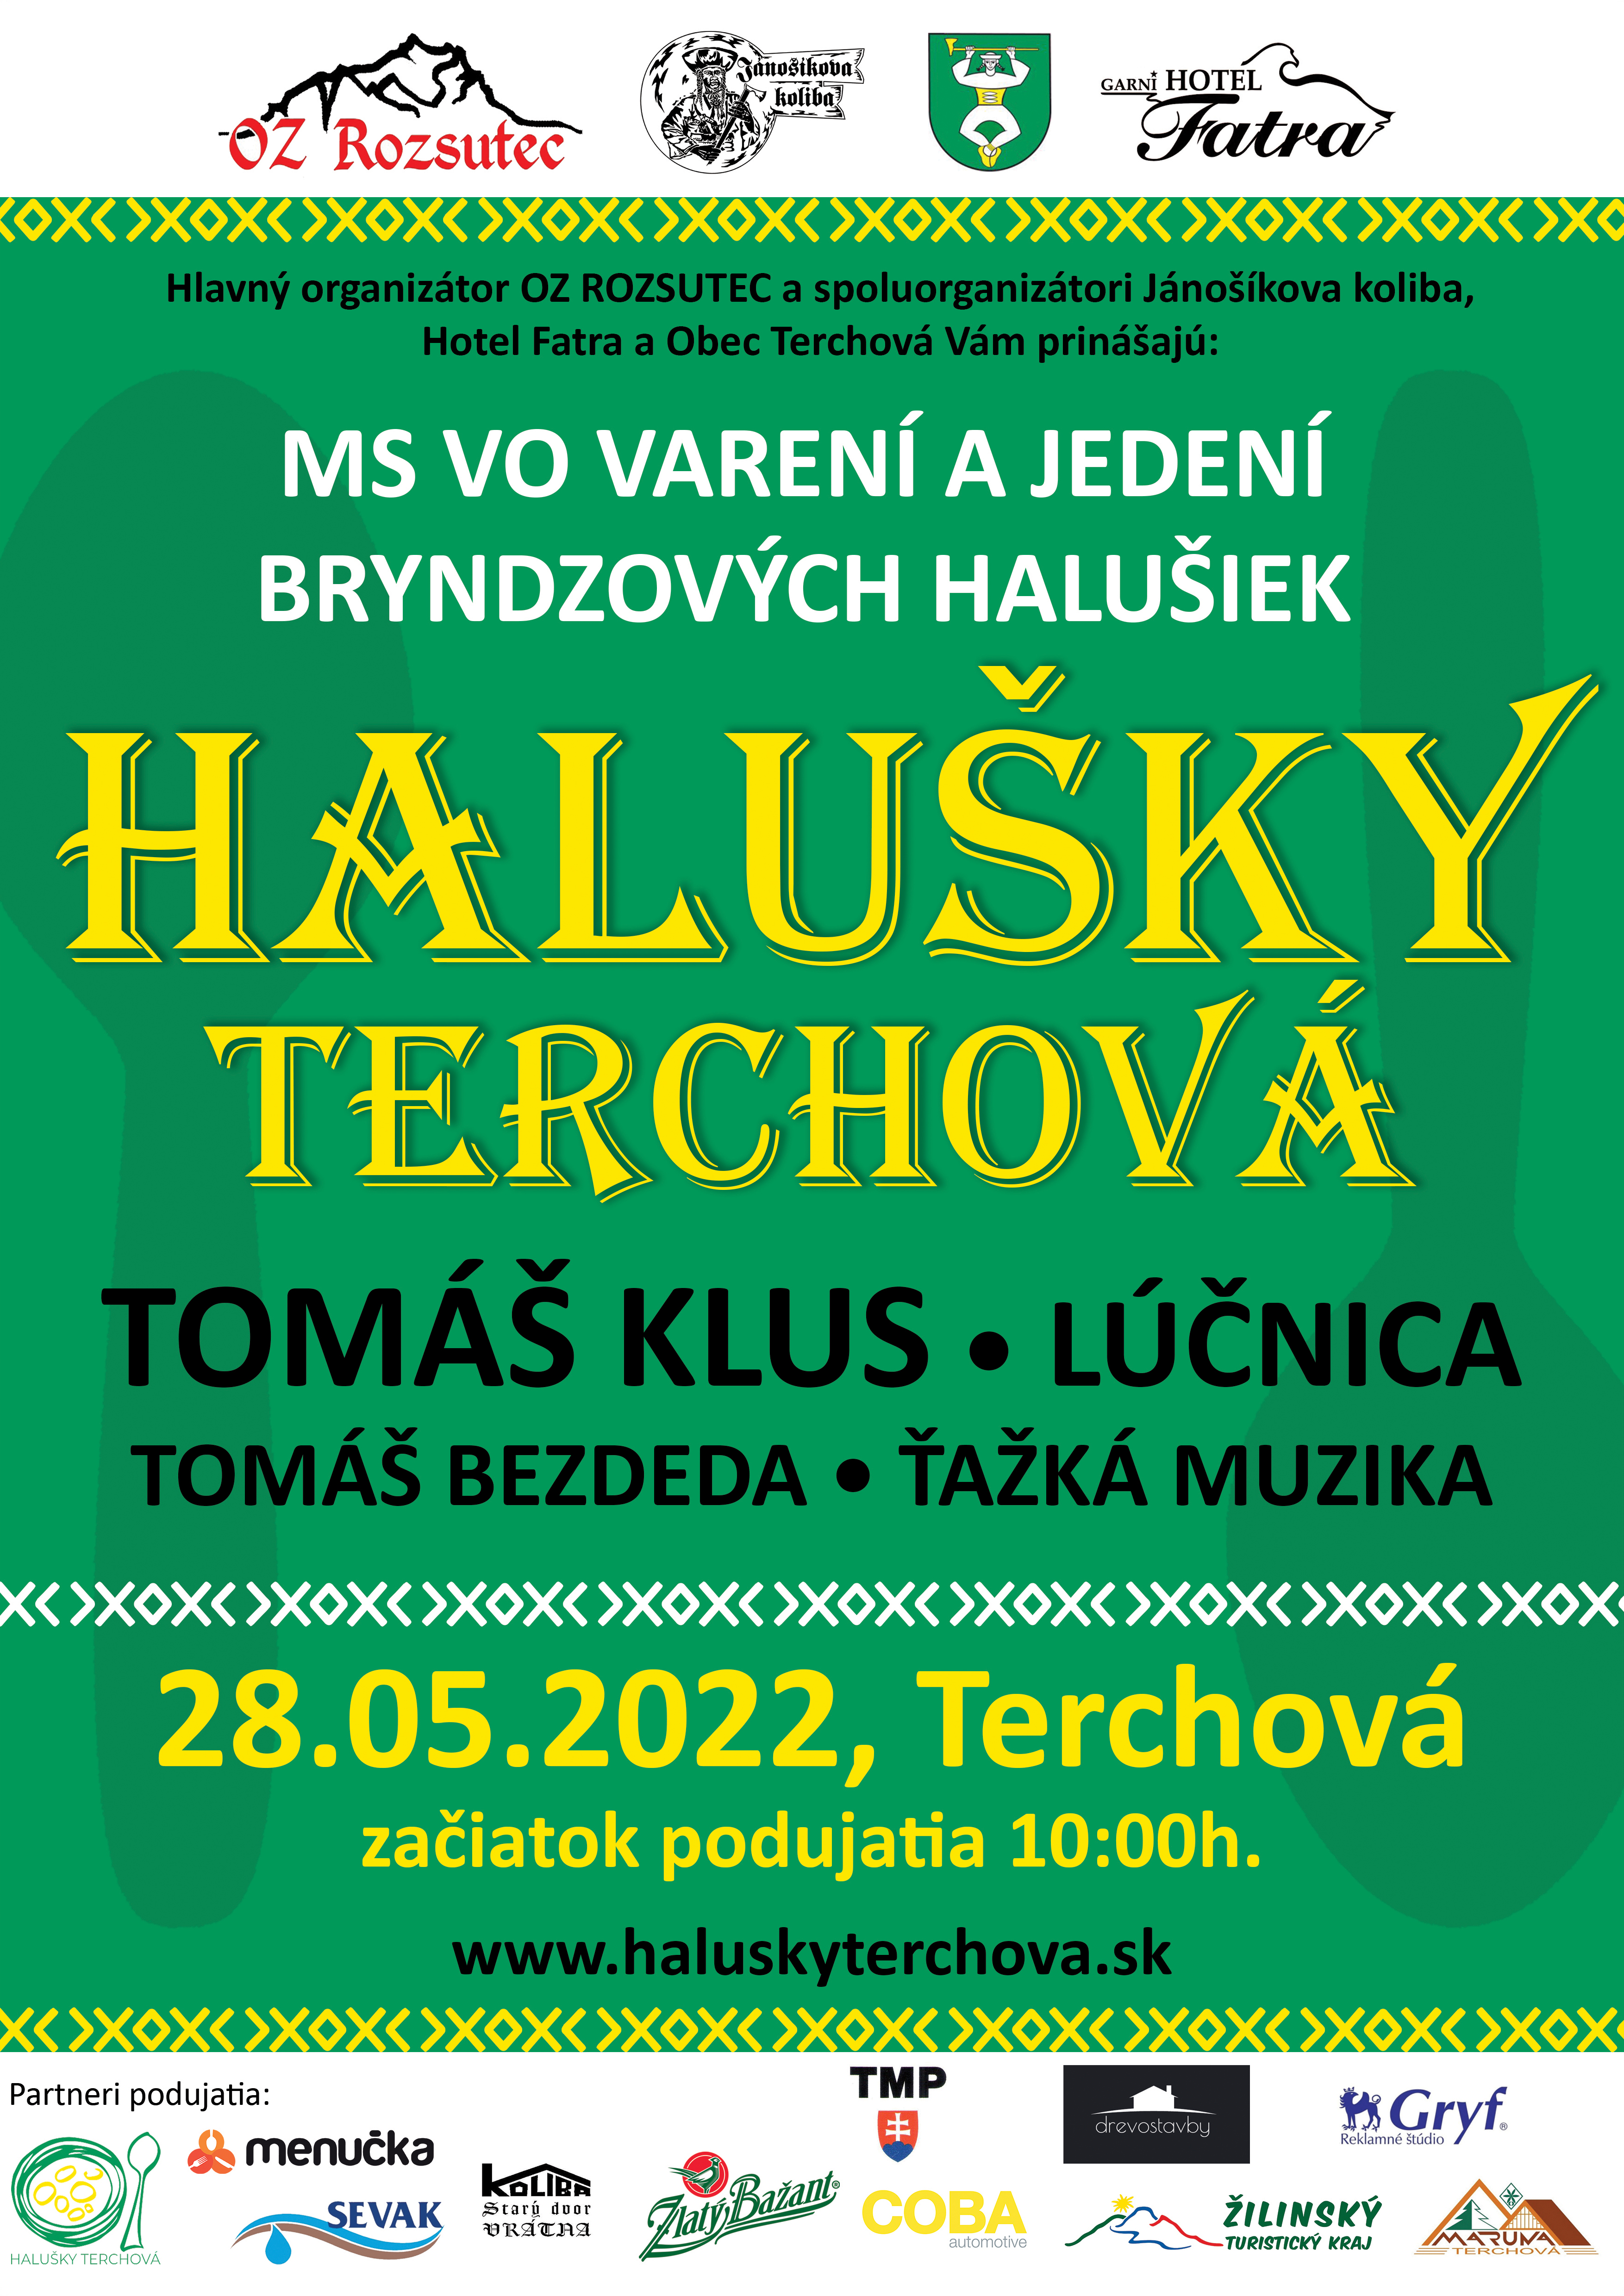 Haluky Terchov 2022